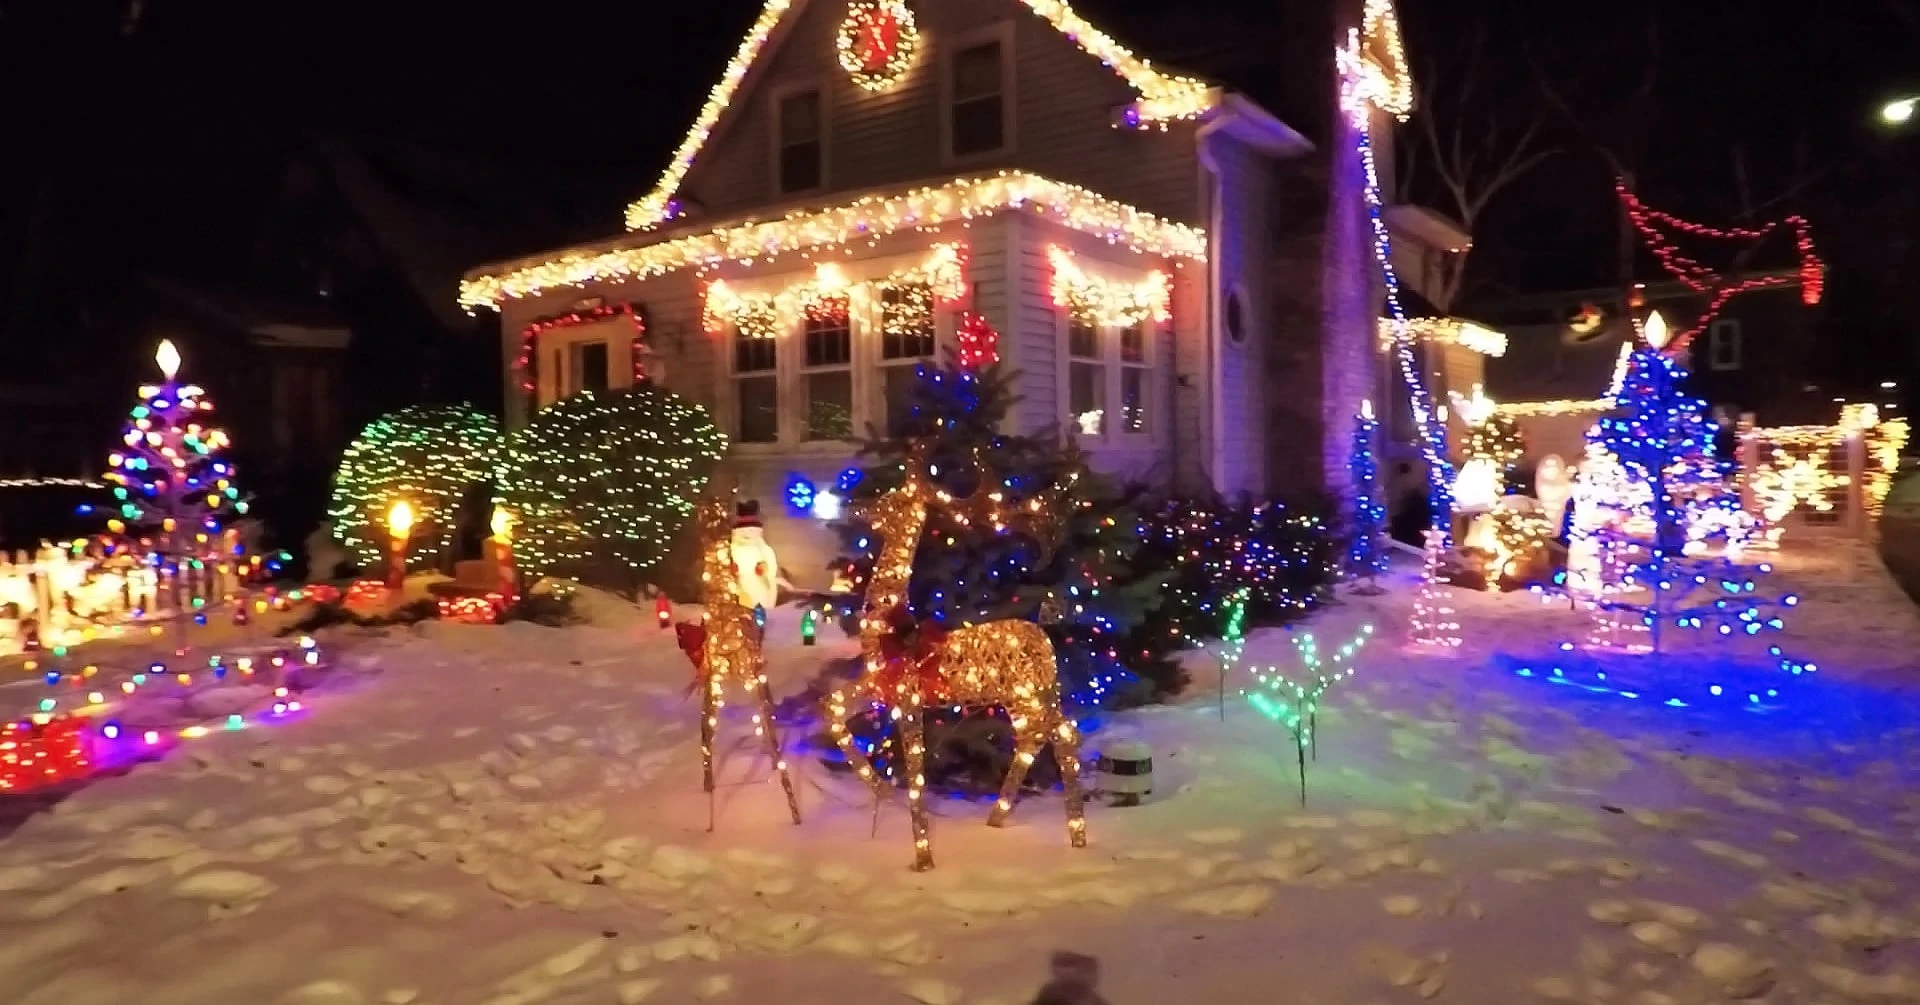 Residential Christmas lights, display of Christmas lights